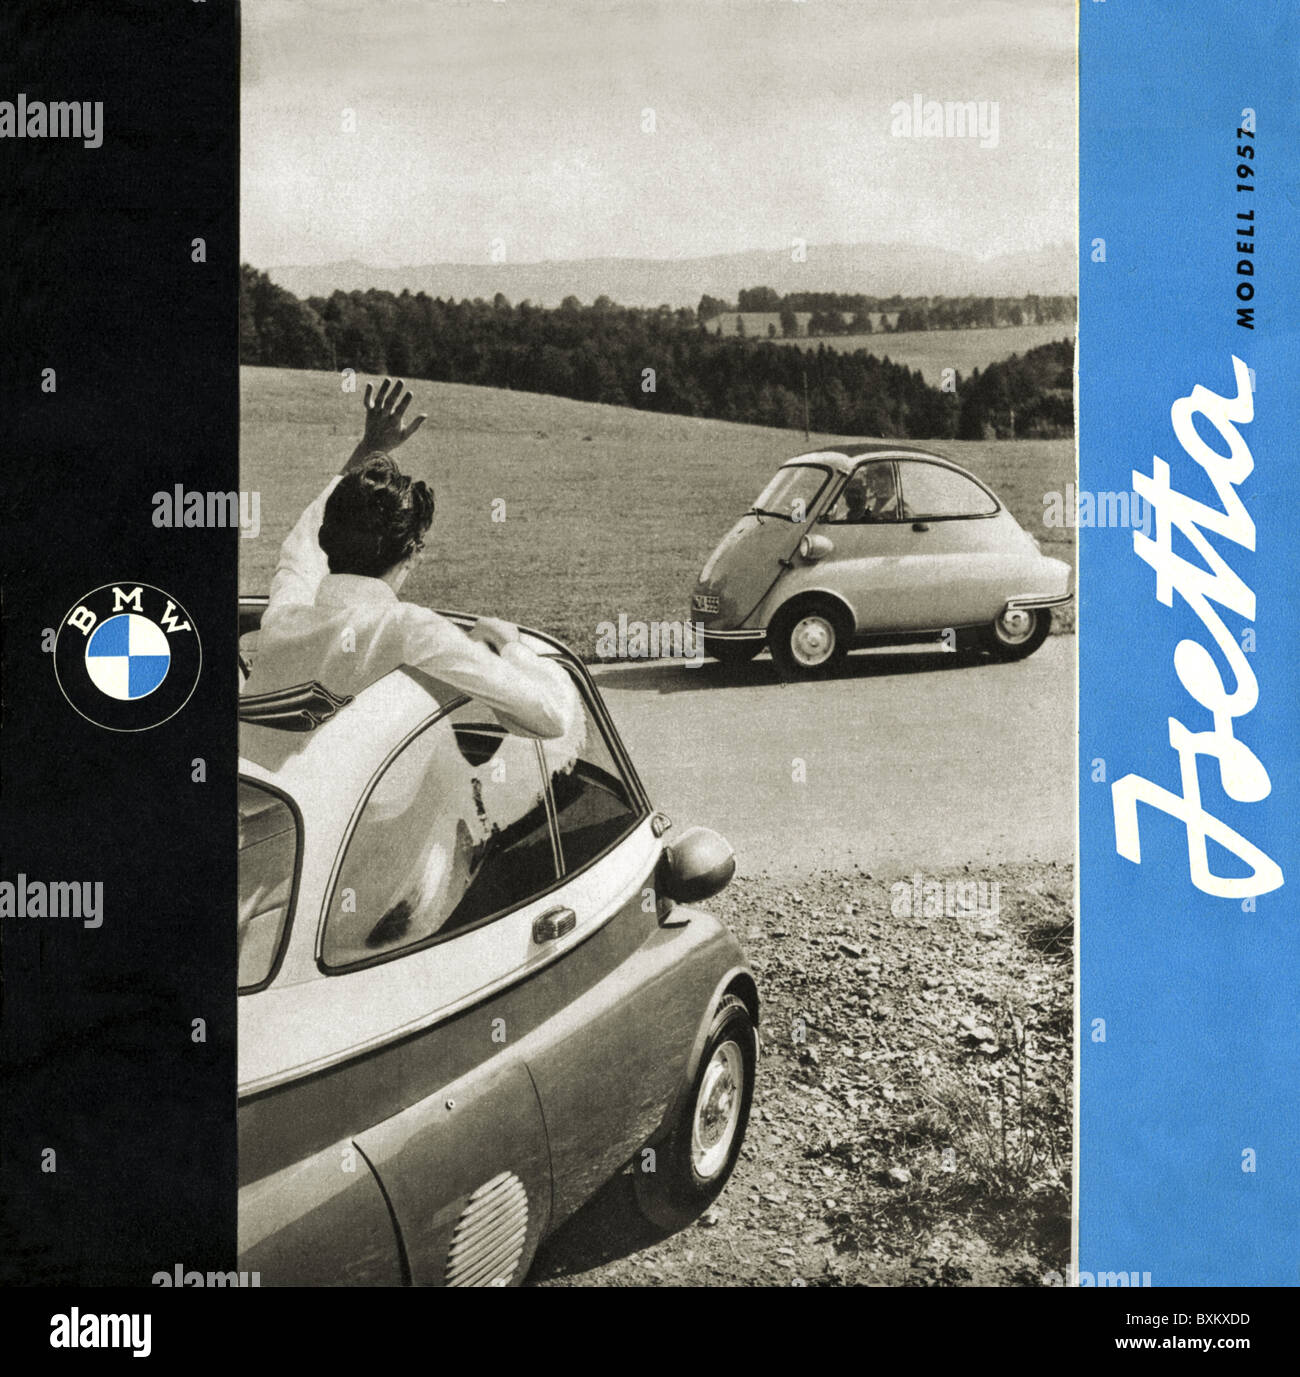 Trasporto / trasporto, auto, veicoli varianti, BMW Isetta, Germania, 1956/1957, chiamato: 'Esportazione', diritti aggiuntivi-clearences-non disponibile Foto Stock